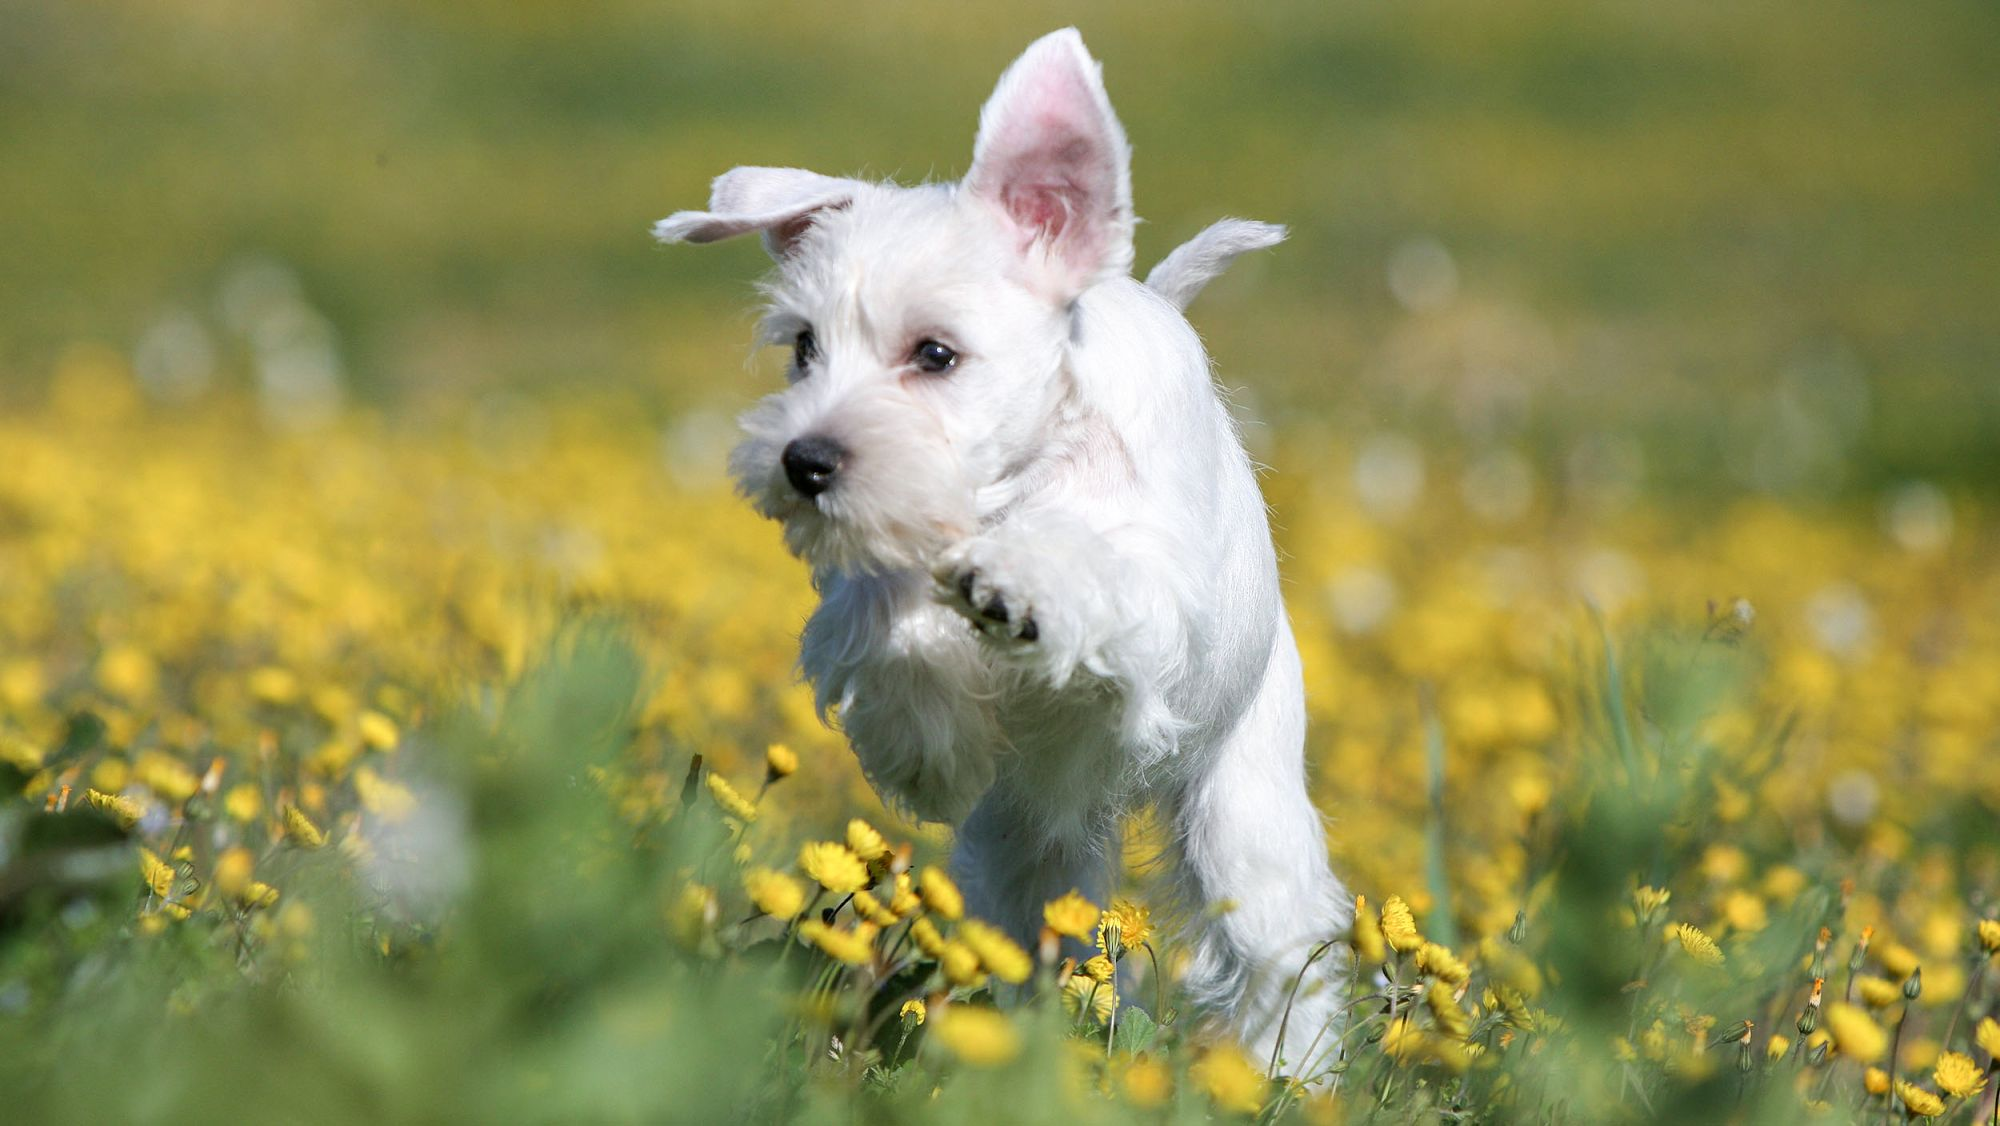 White Schnauzer puppy running through grass